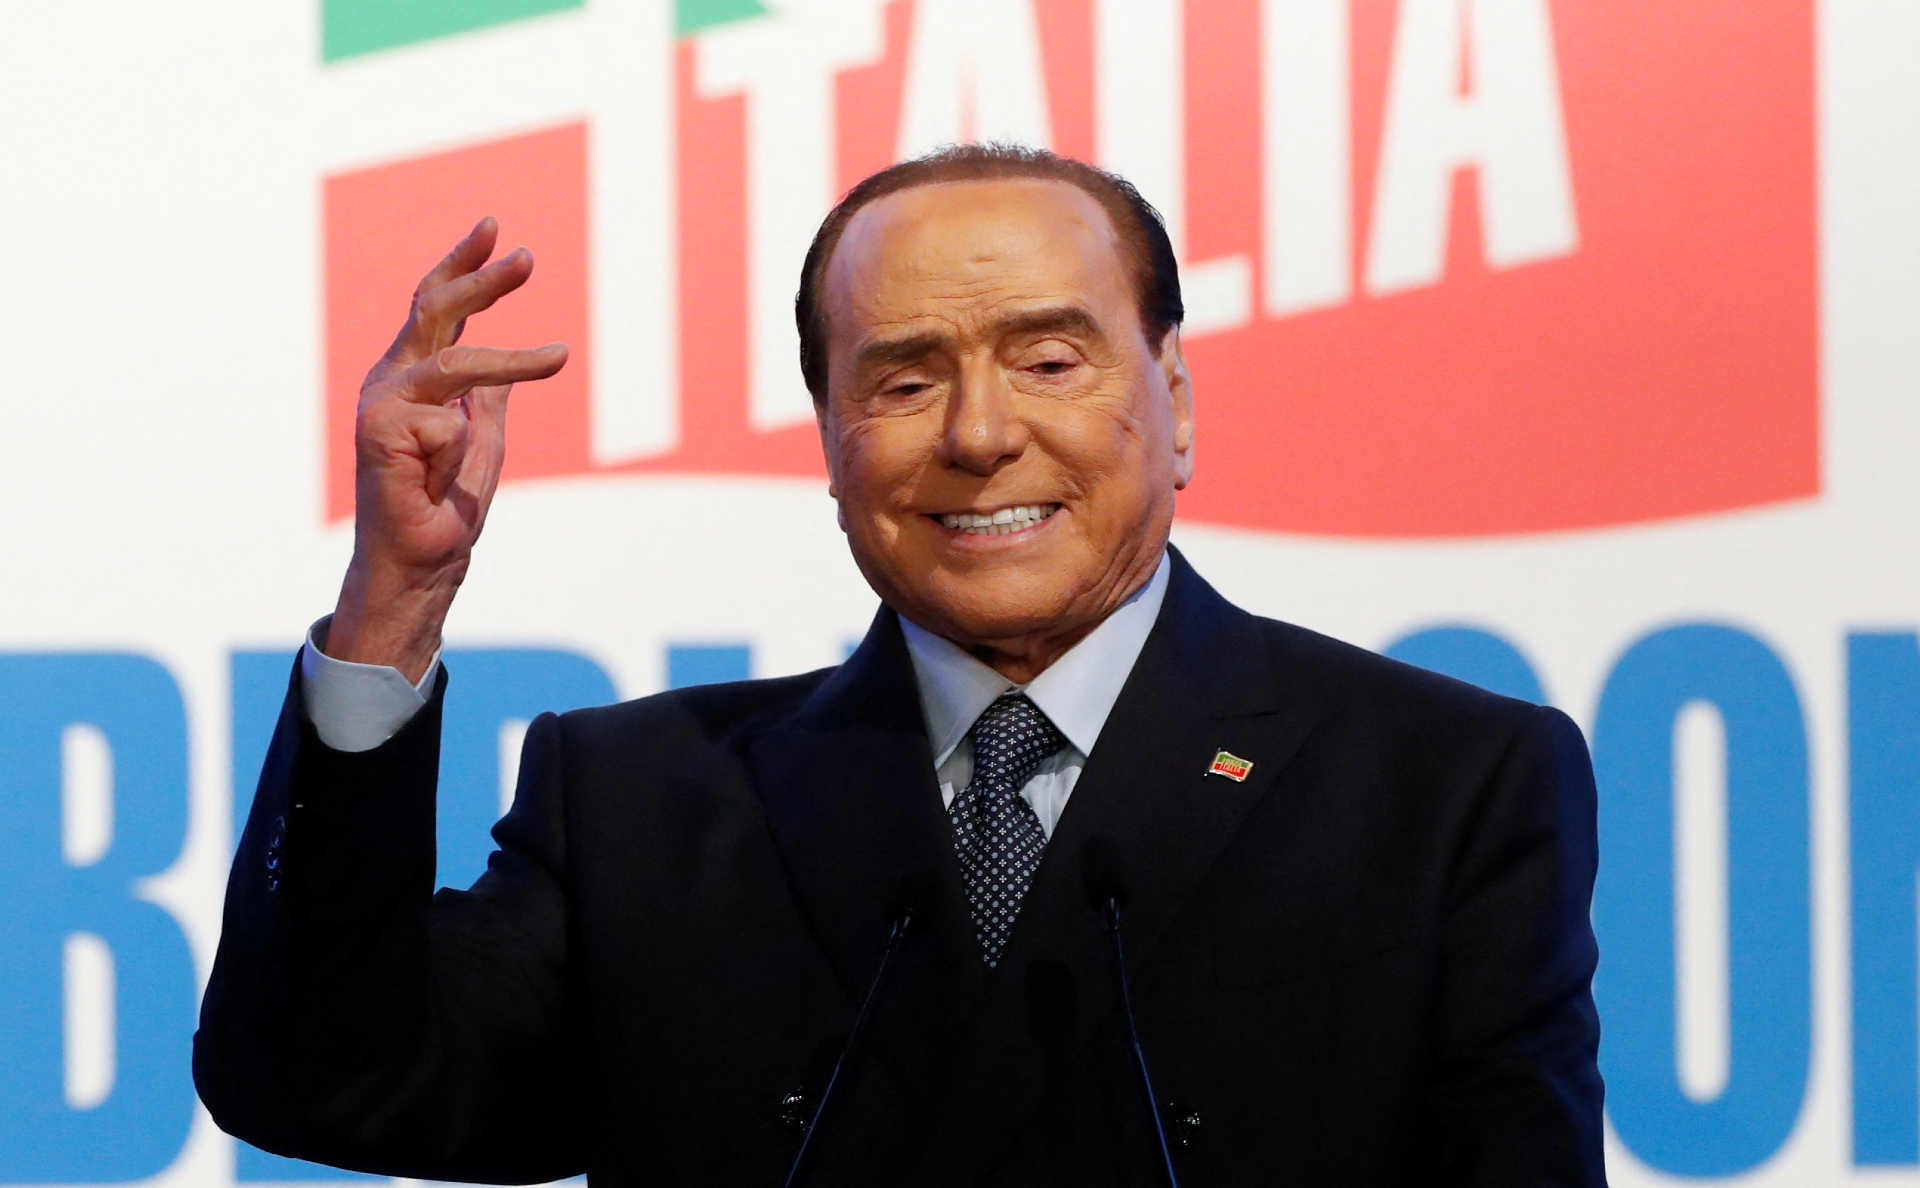 Берлускони увидел «изоляцию» позиции Запада по Украине от остального мира"/>













